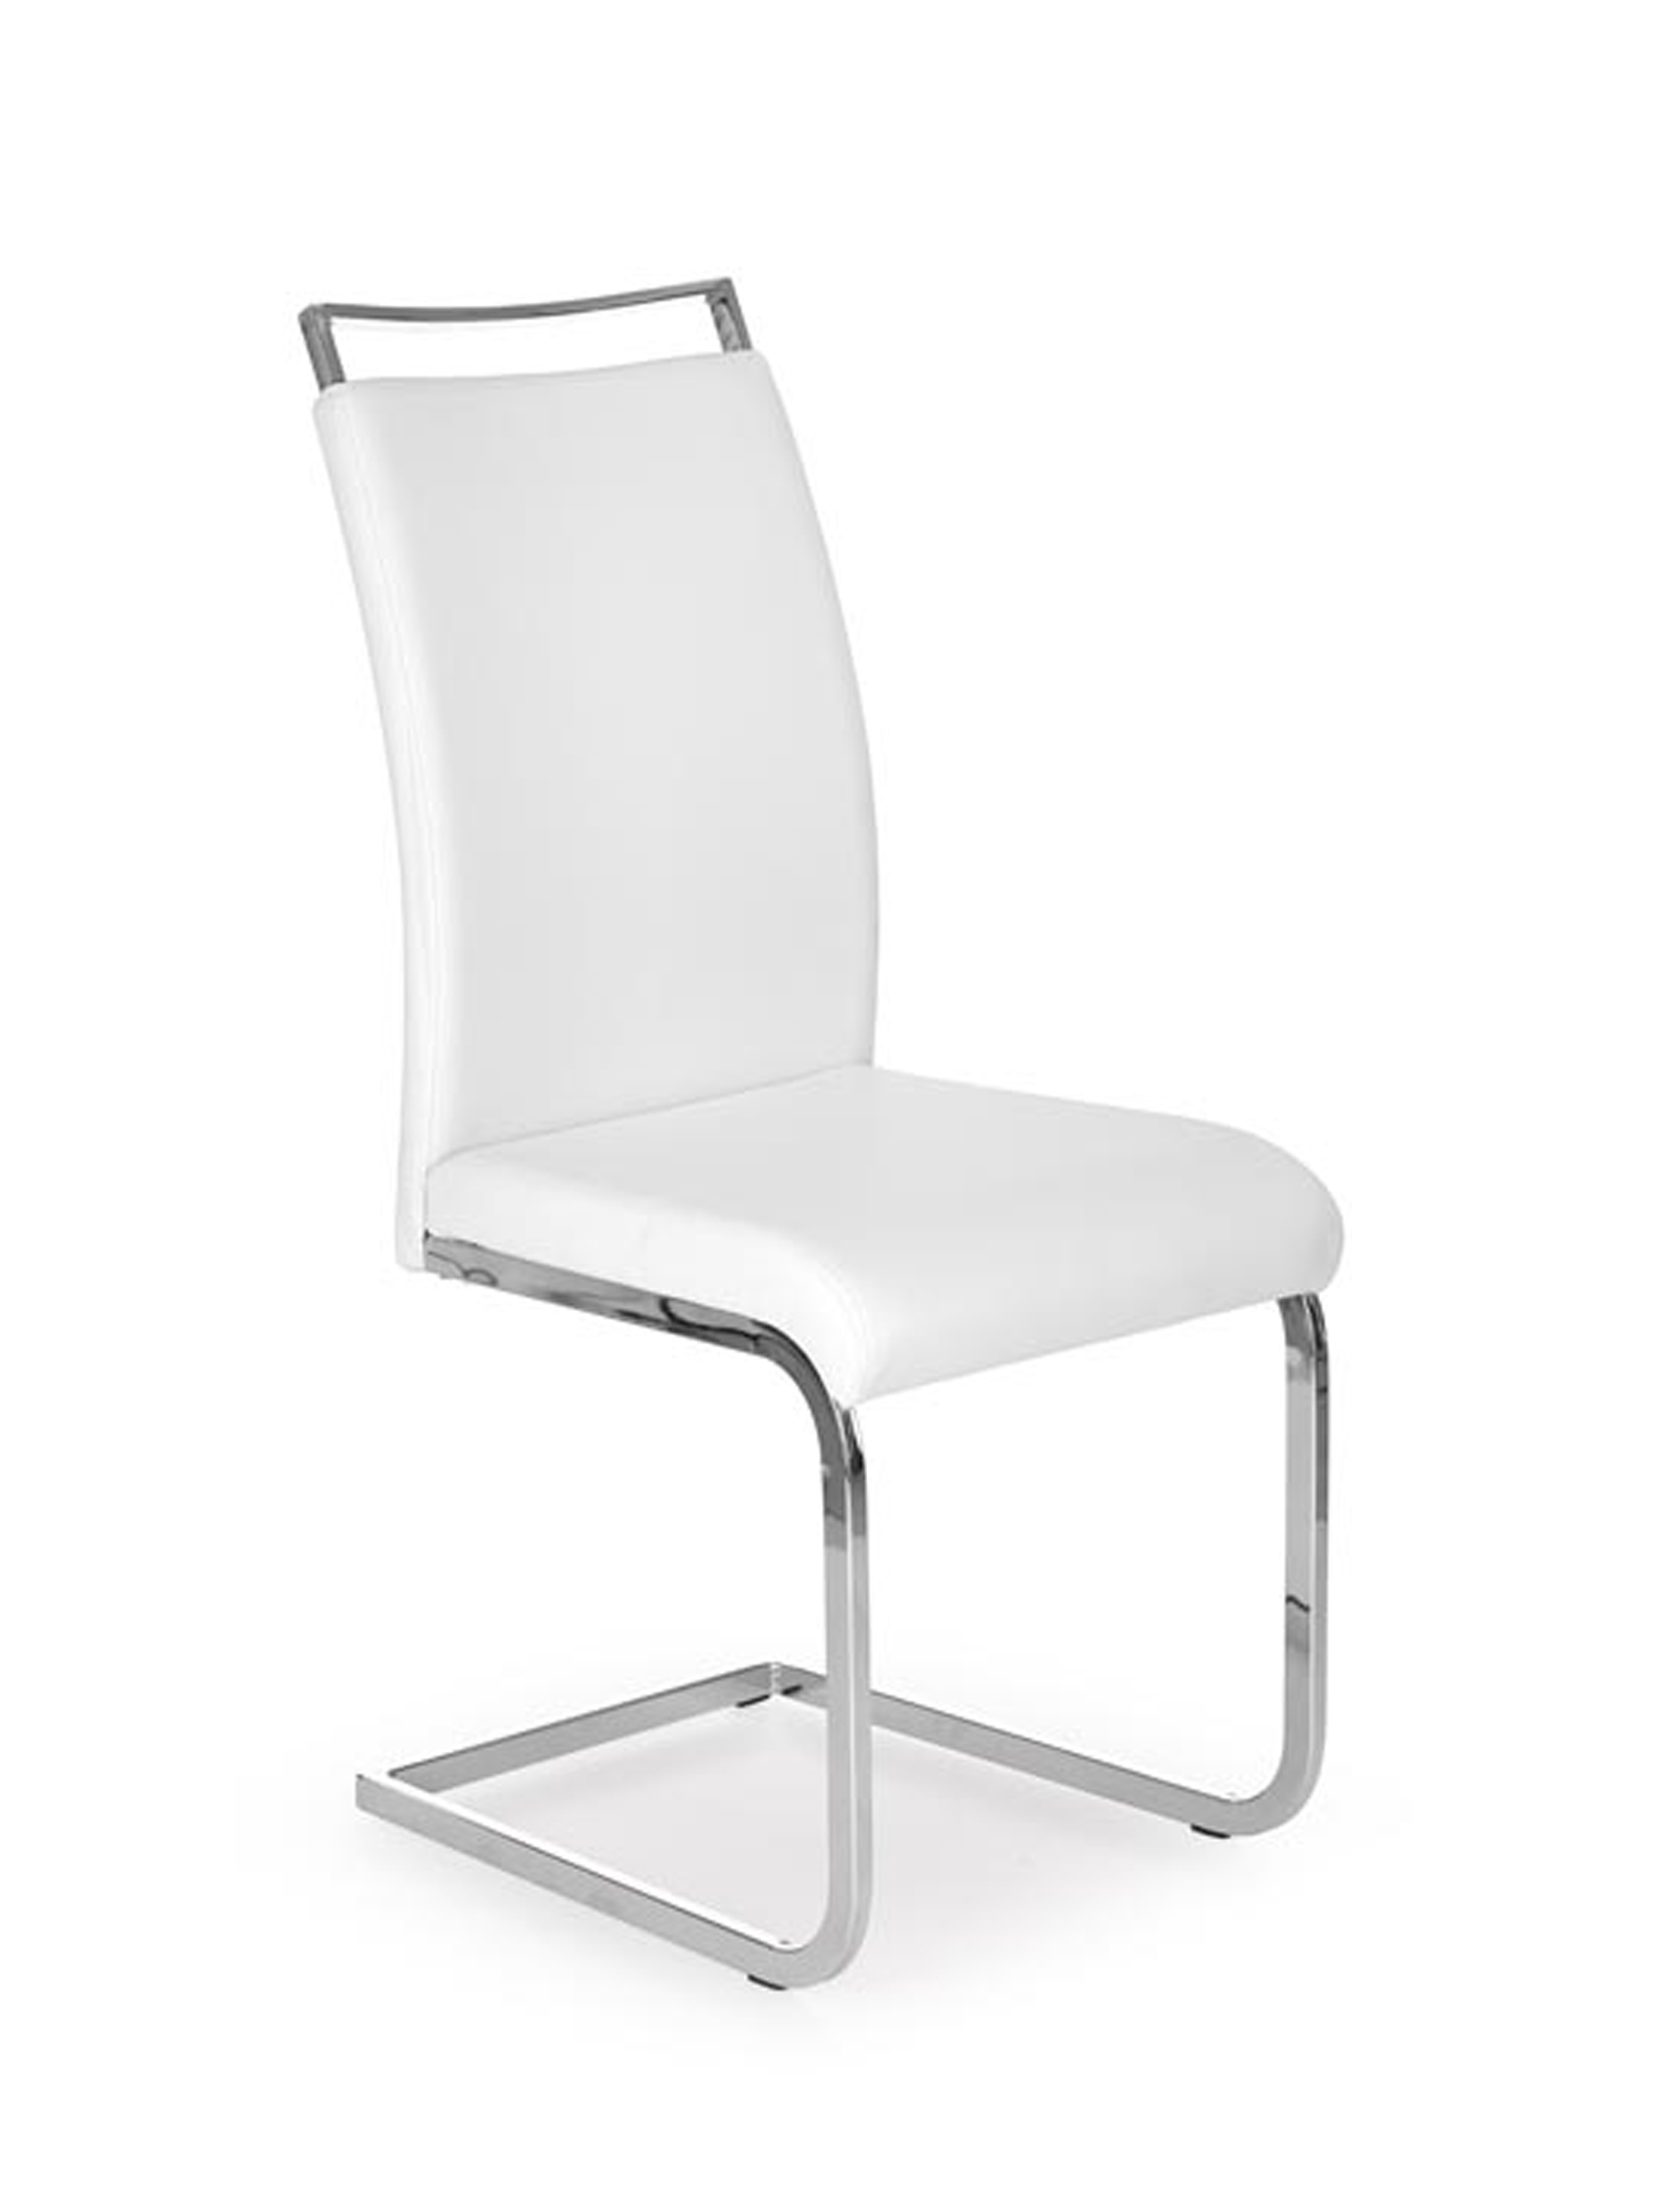 K250 szék - fehér Židle k250 - Bílá